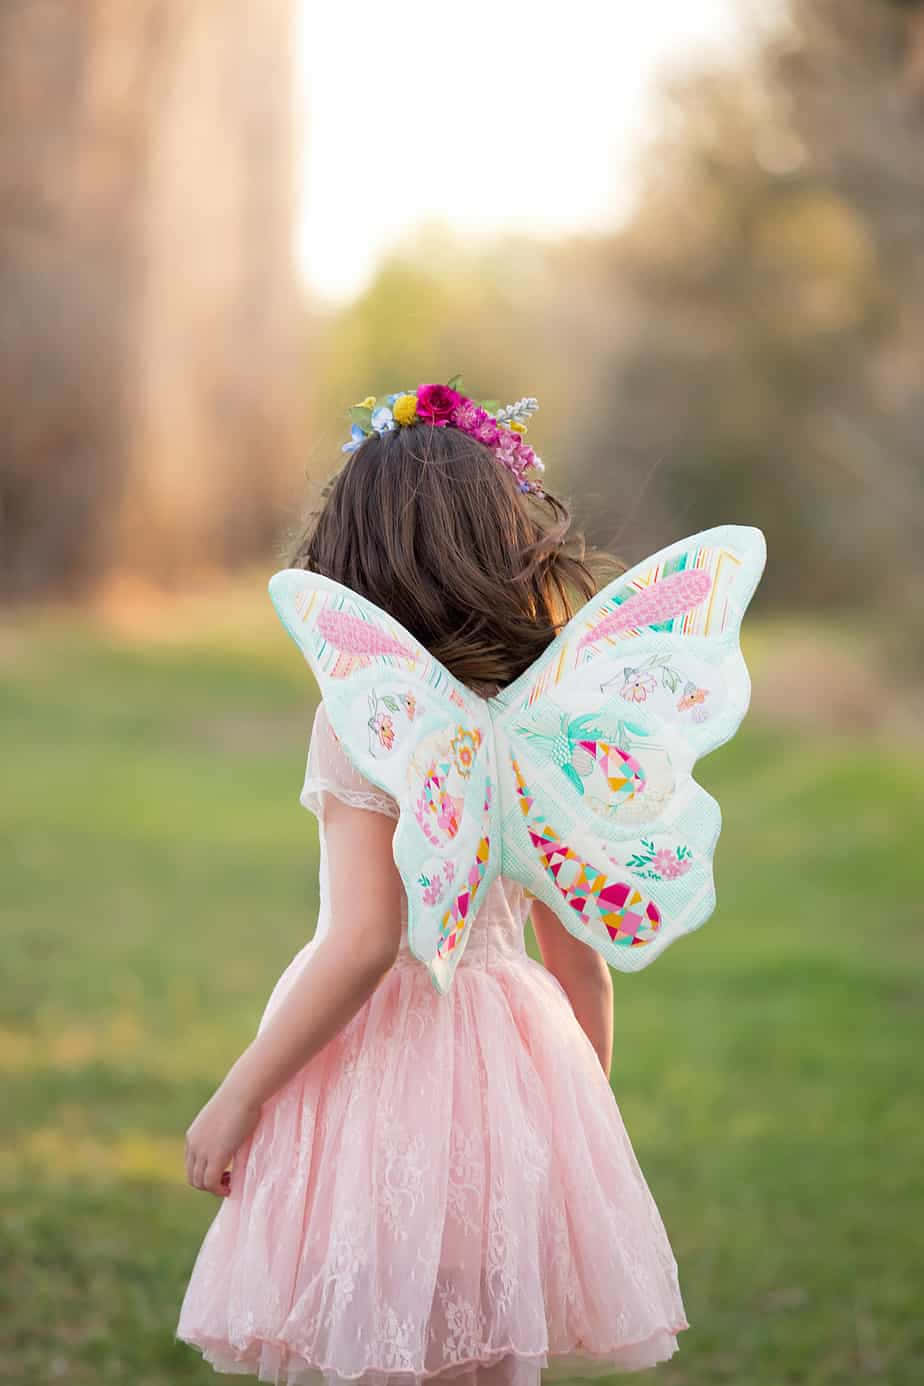 beautiful pink butterfly wings